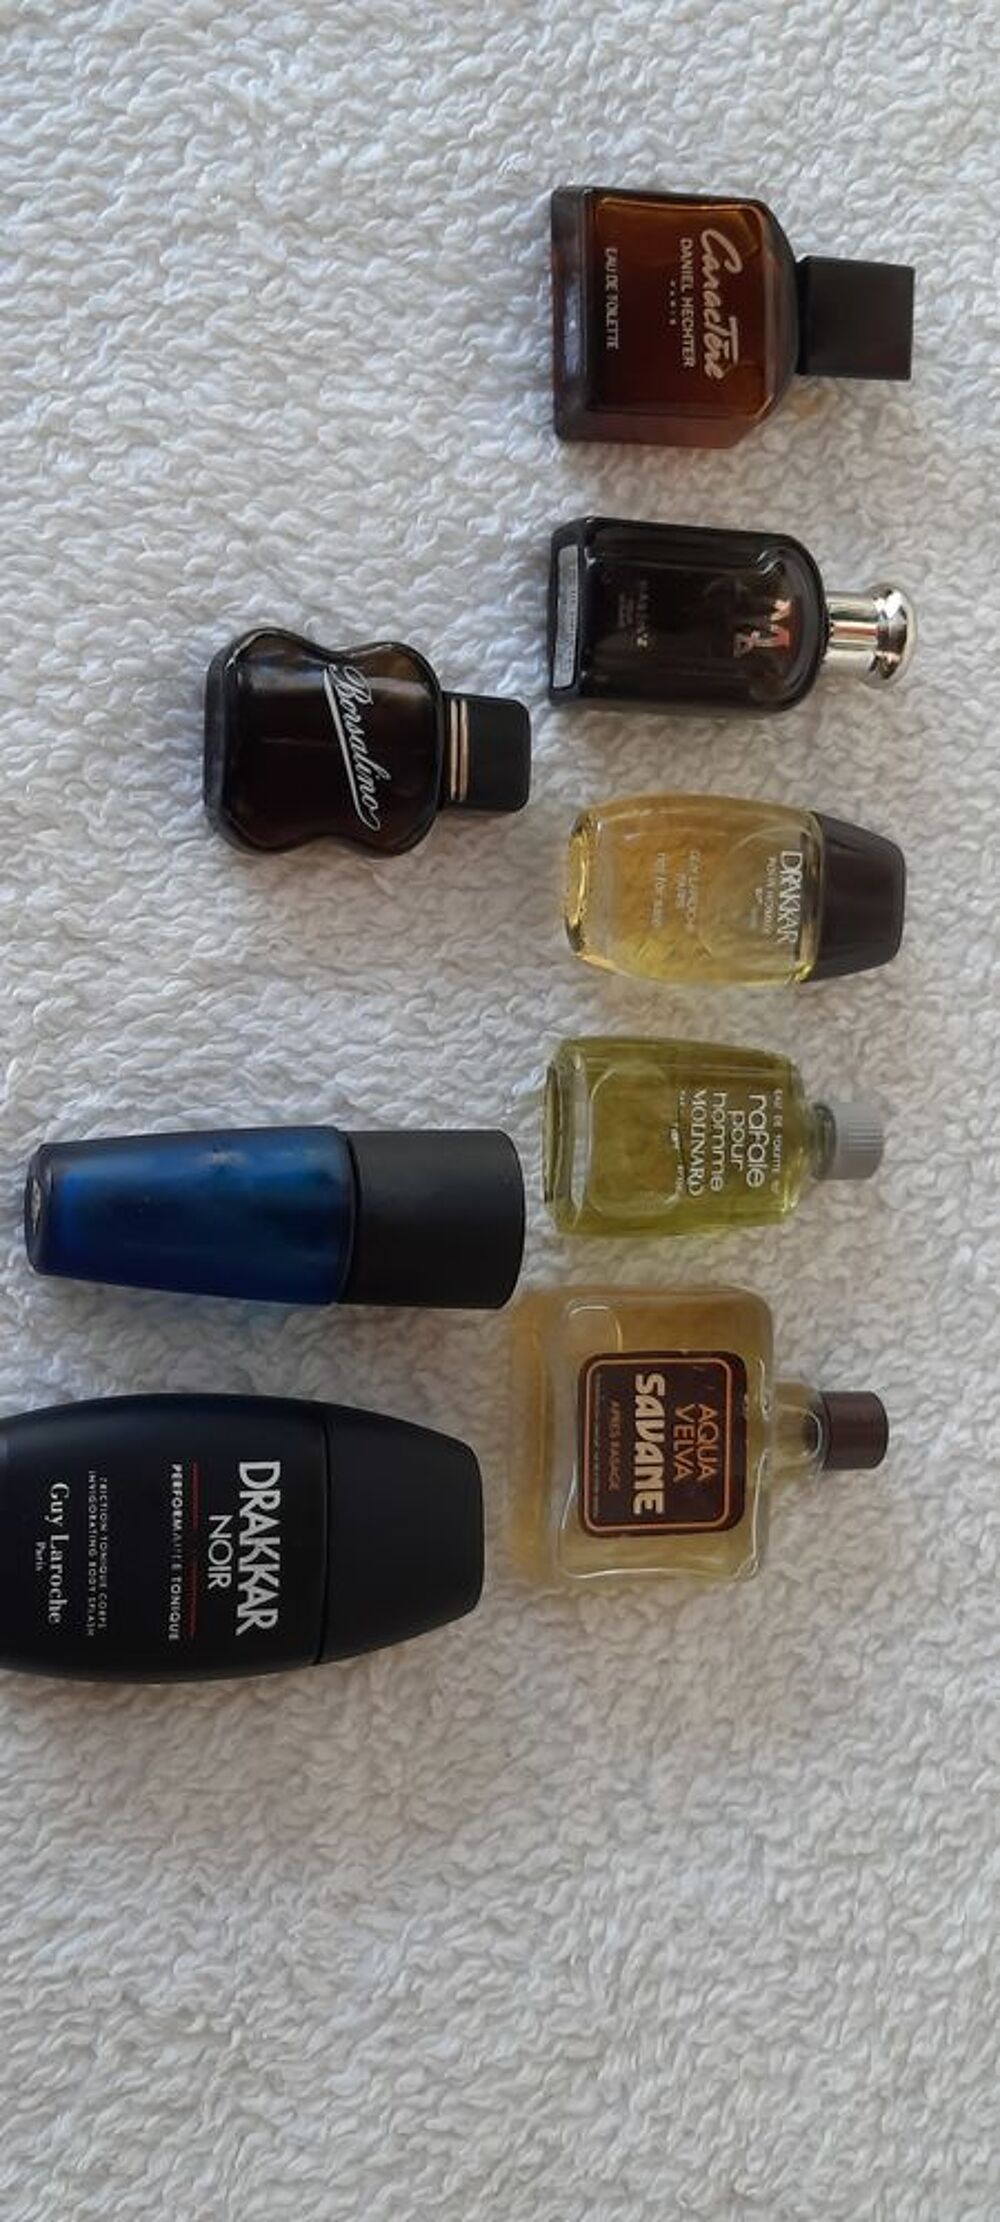 Lot de 8 miniatures parfum originales pour homme 